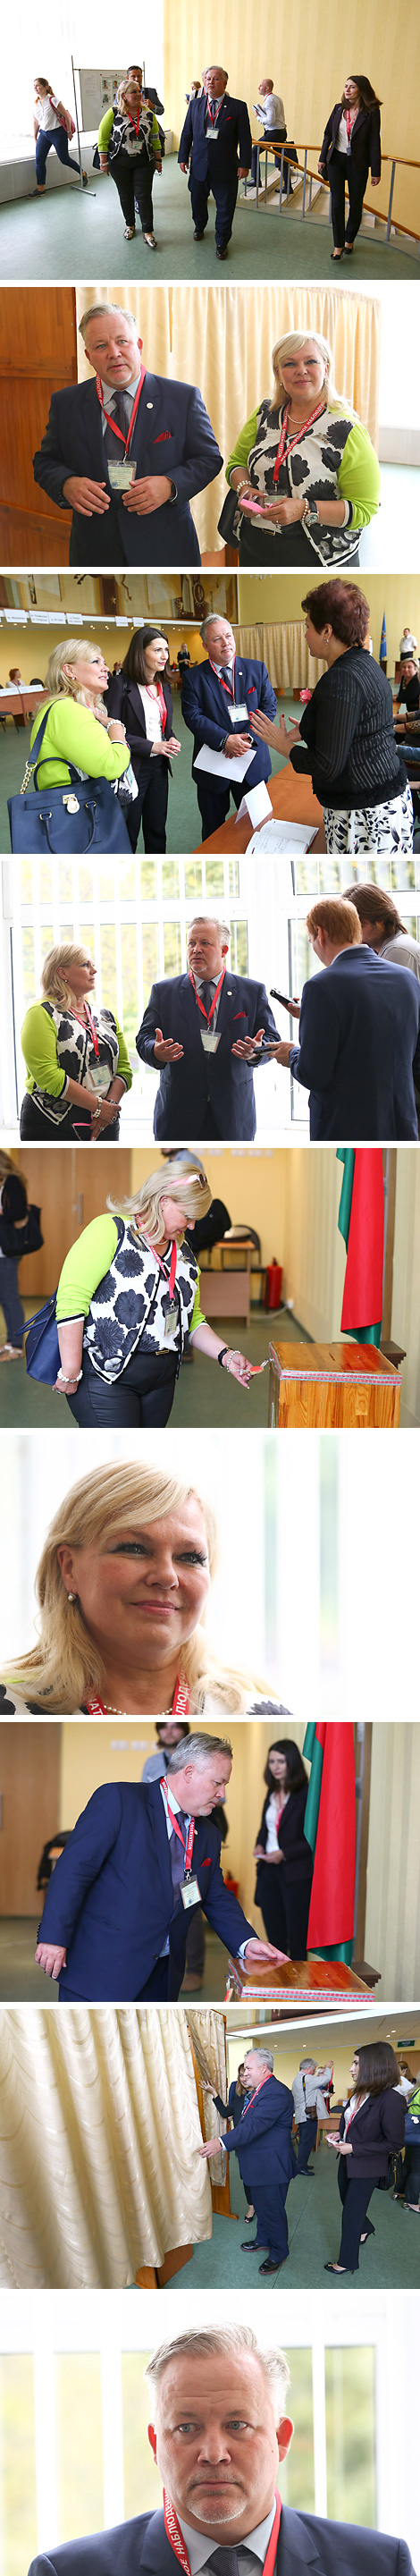 Наблюдатели ОБСЕ посетили участок для голосования №10 в Минске